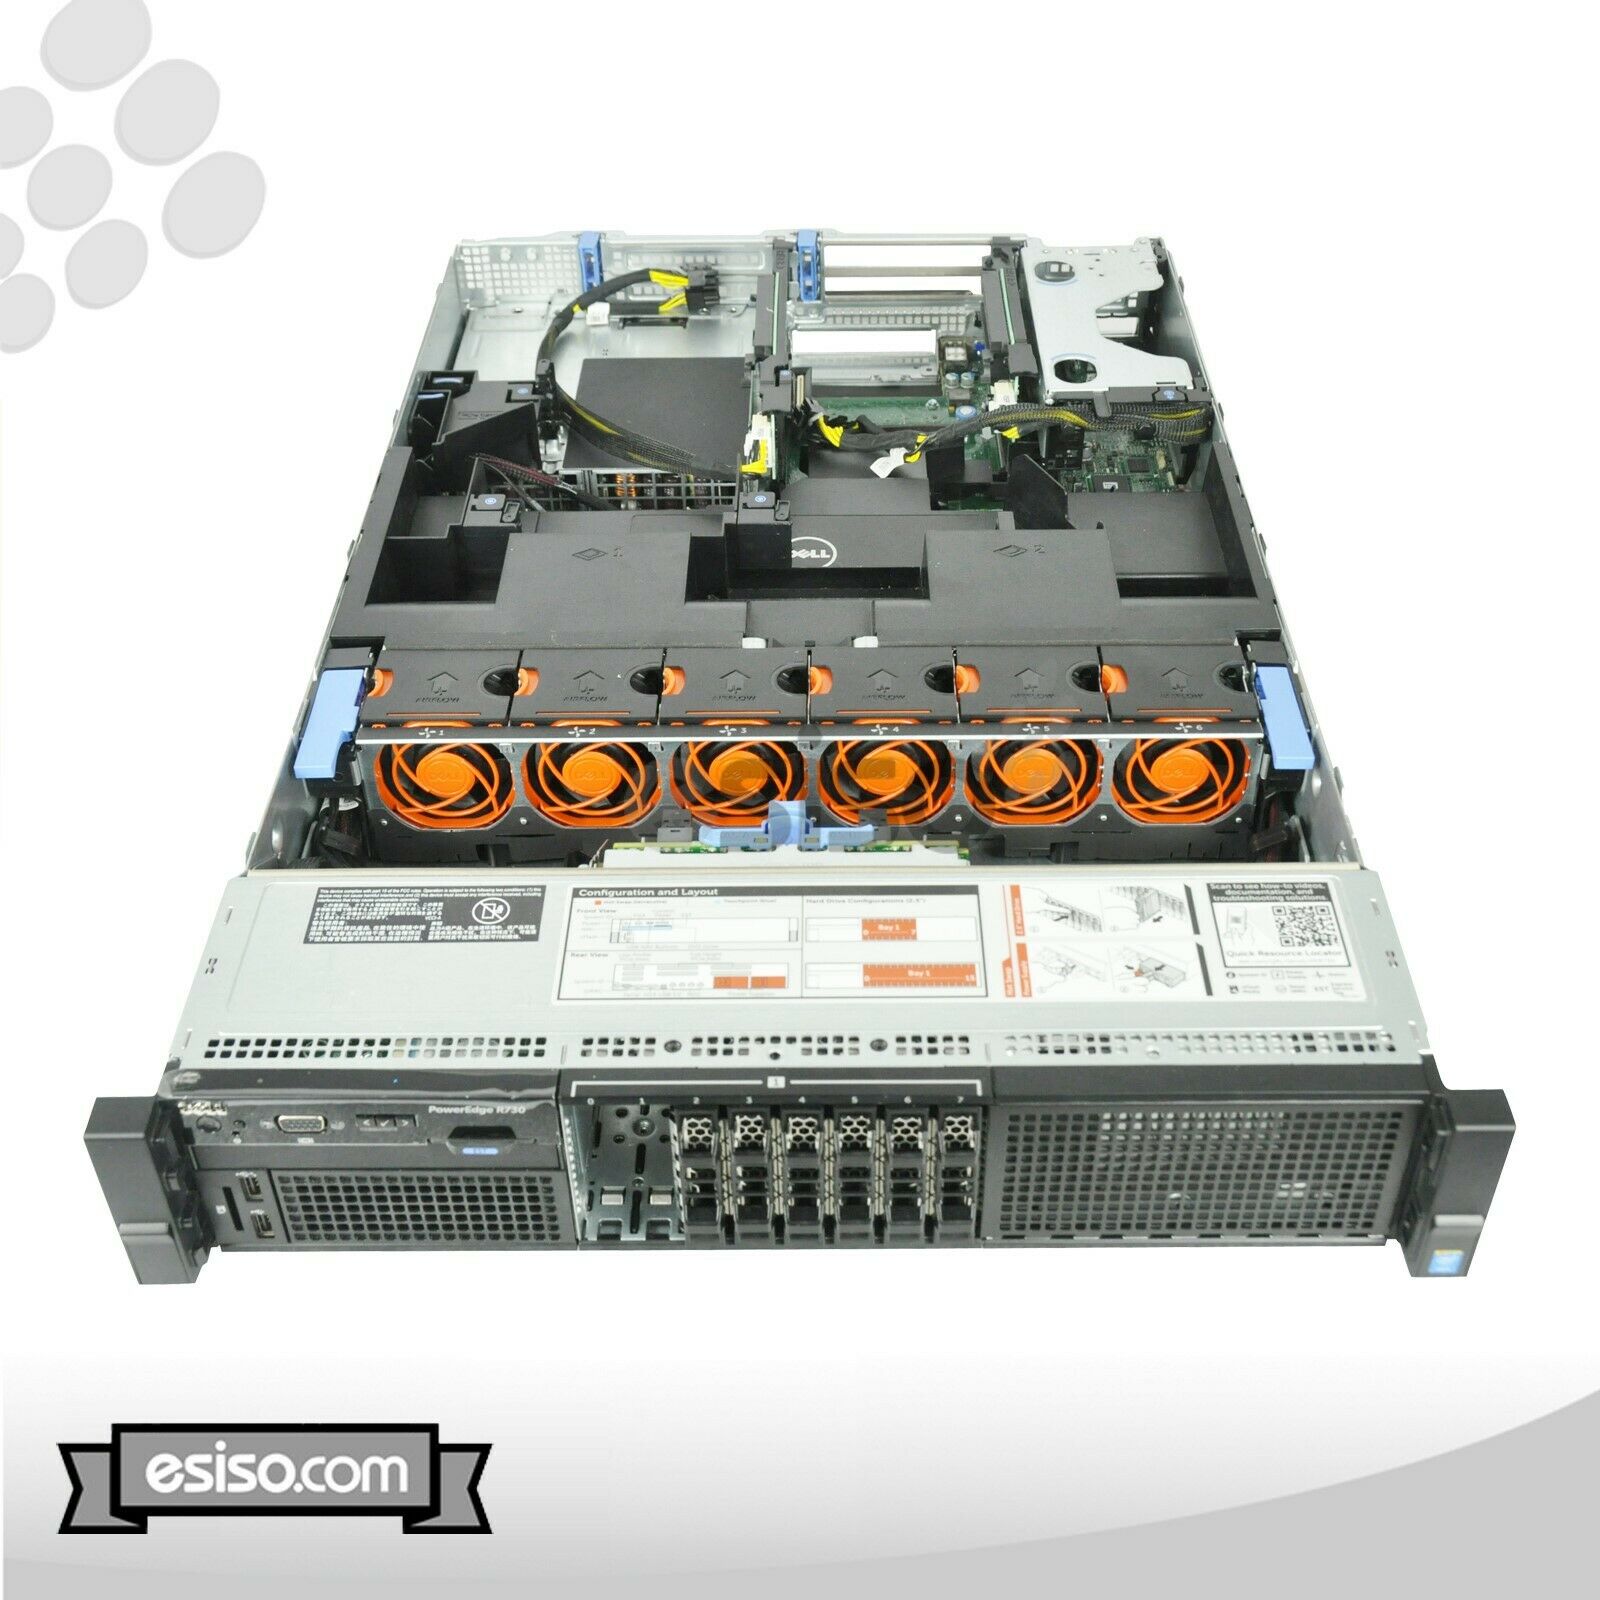 DELL POWEREDGE R730 8SFF 2x 4 CORE E5-2623v3 3.0GHz 64GB RAM 8x TRAYS H730